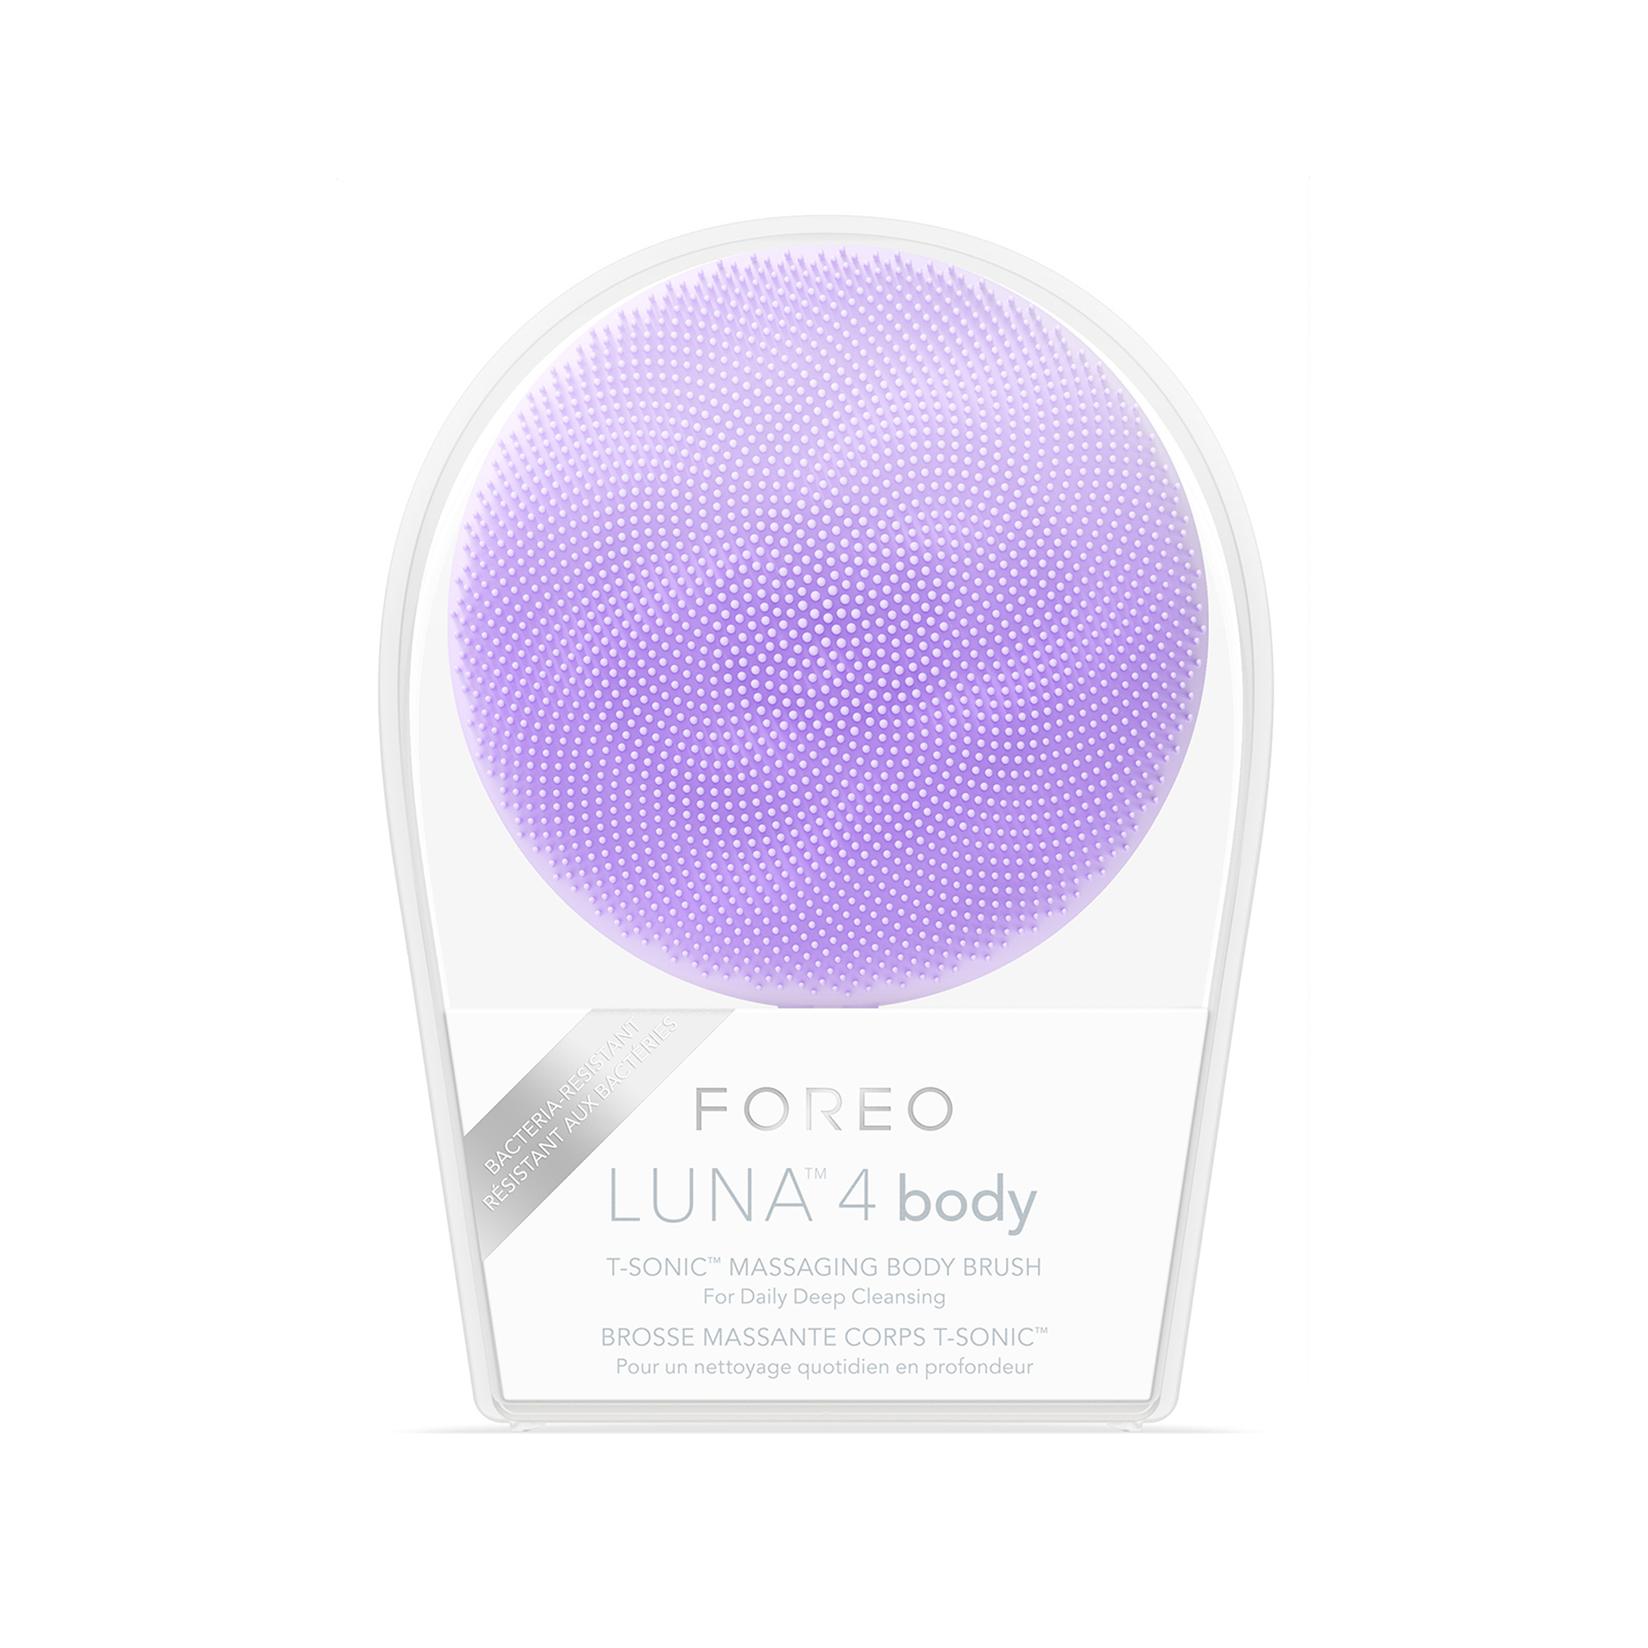 Selected image for FOREO LUNA 4 Body Lavender Pametni sonični uređaj i masažer za čišćenje tela